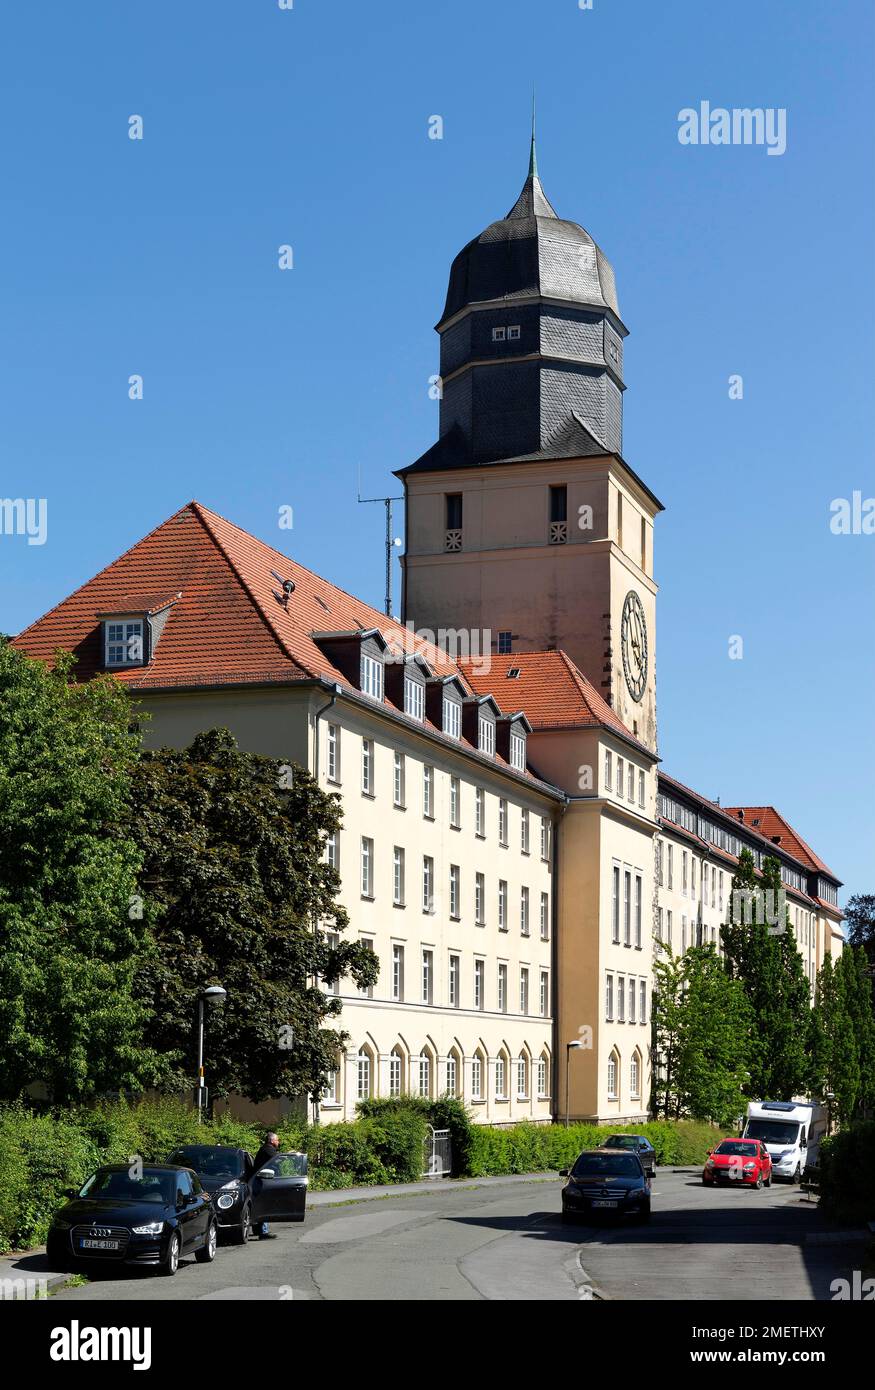 Hauptgebäude der Bezirksregierung Arnsberg, ehemals katholische Lehrerausbildung, Arnsberg, Sauerland, Nordrhein-Westfalen, Deutschland Stockfoto